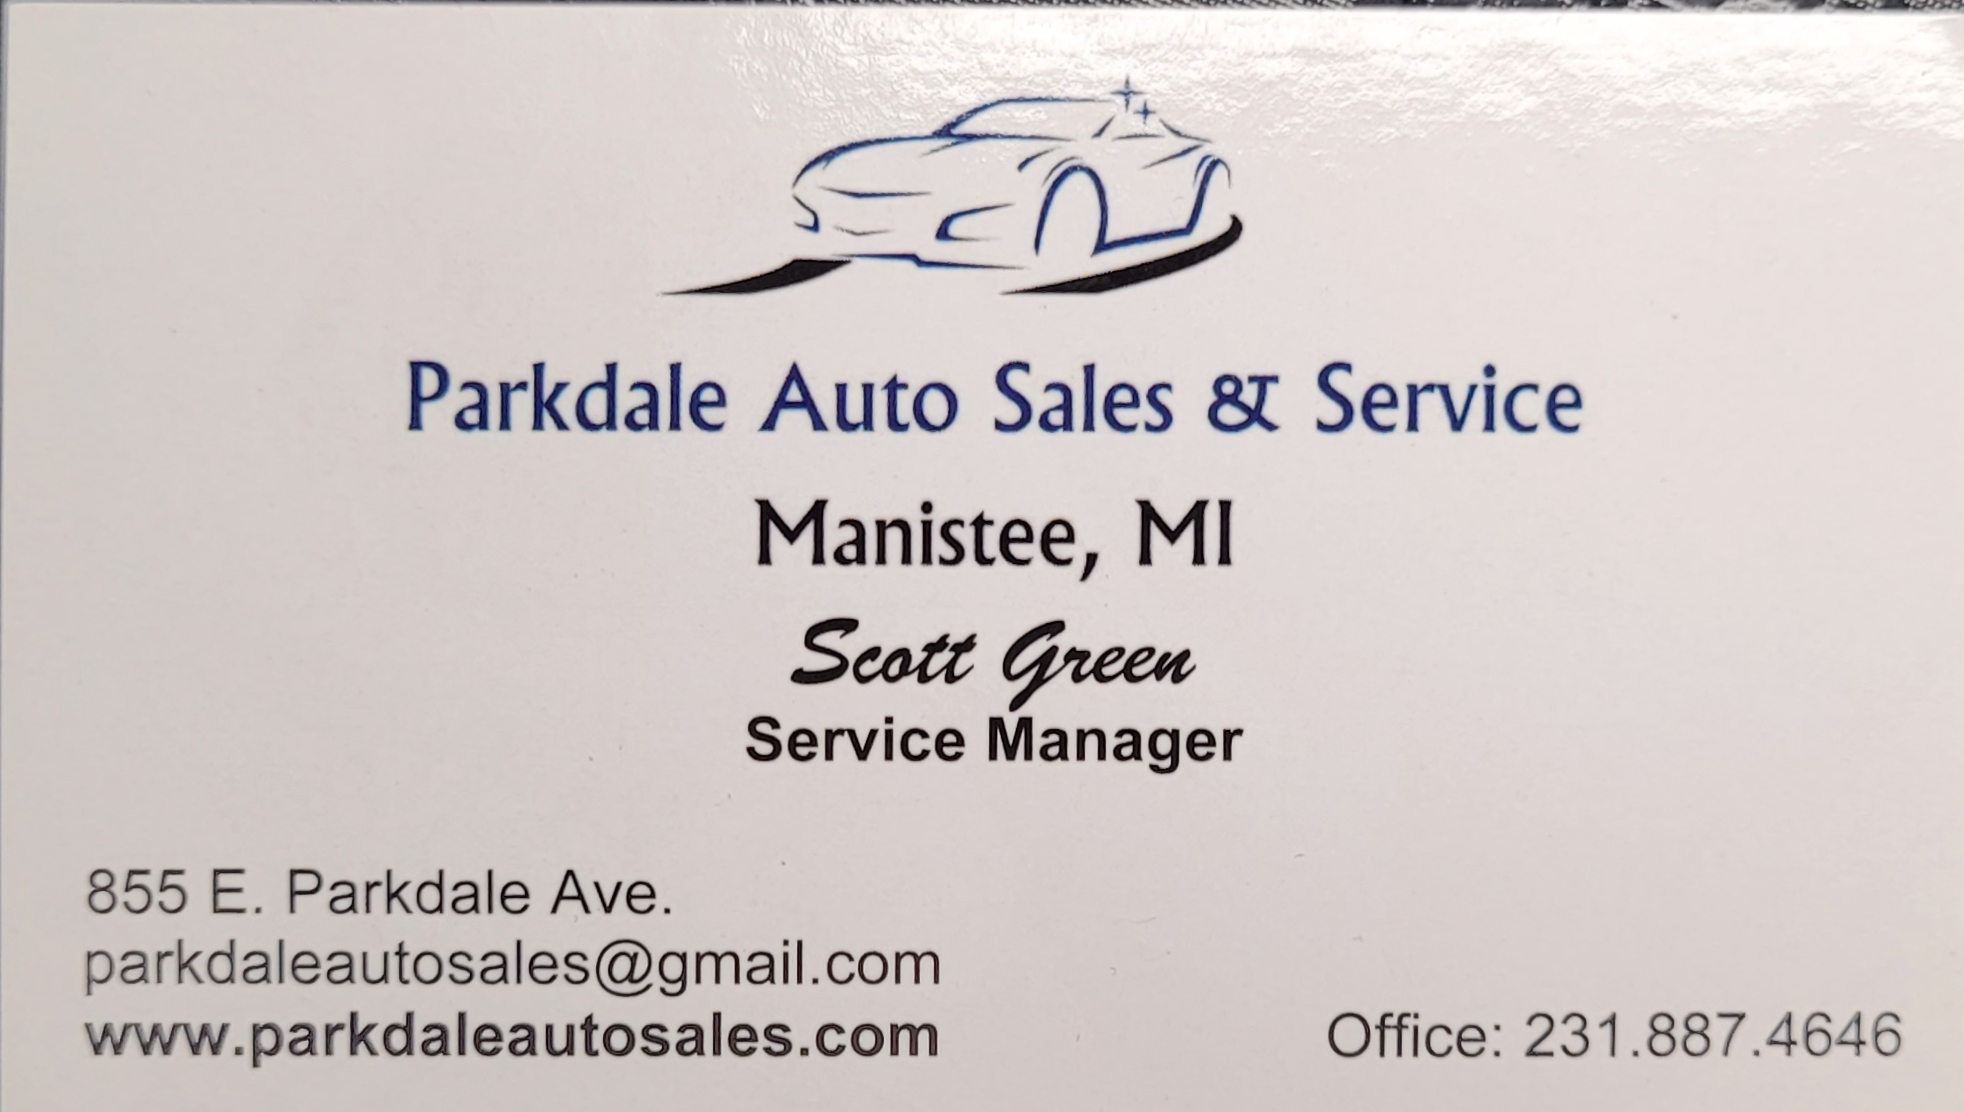 Parkdale Auto Sales & Service